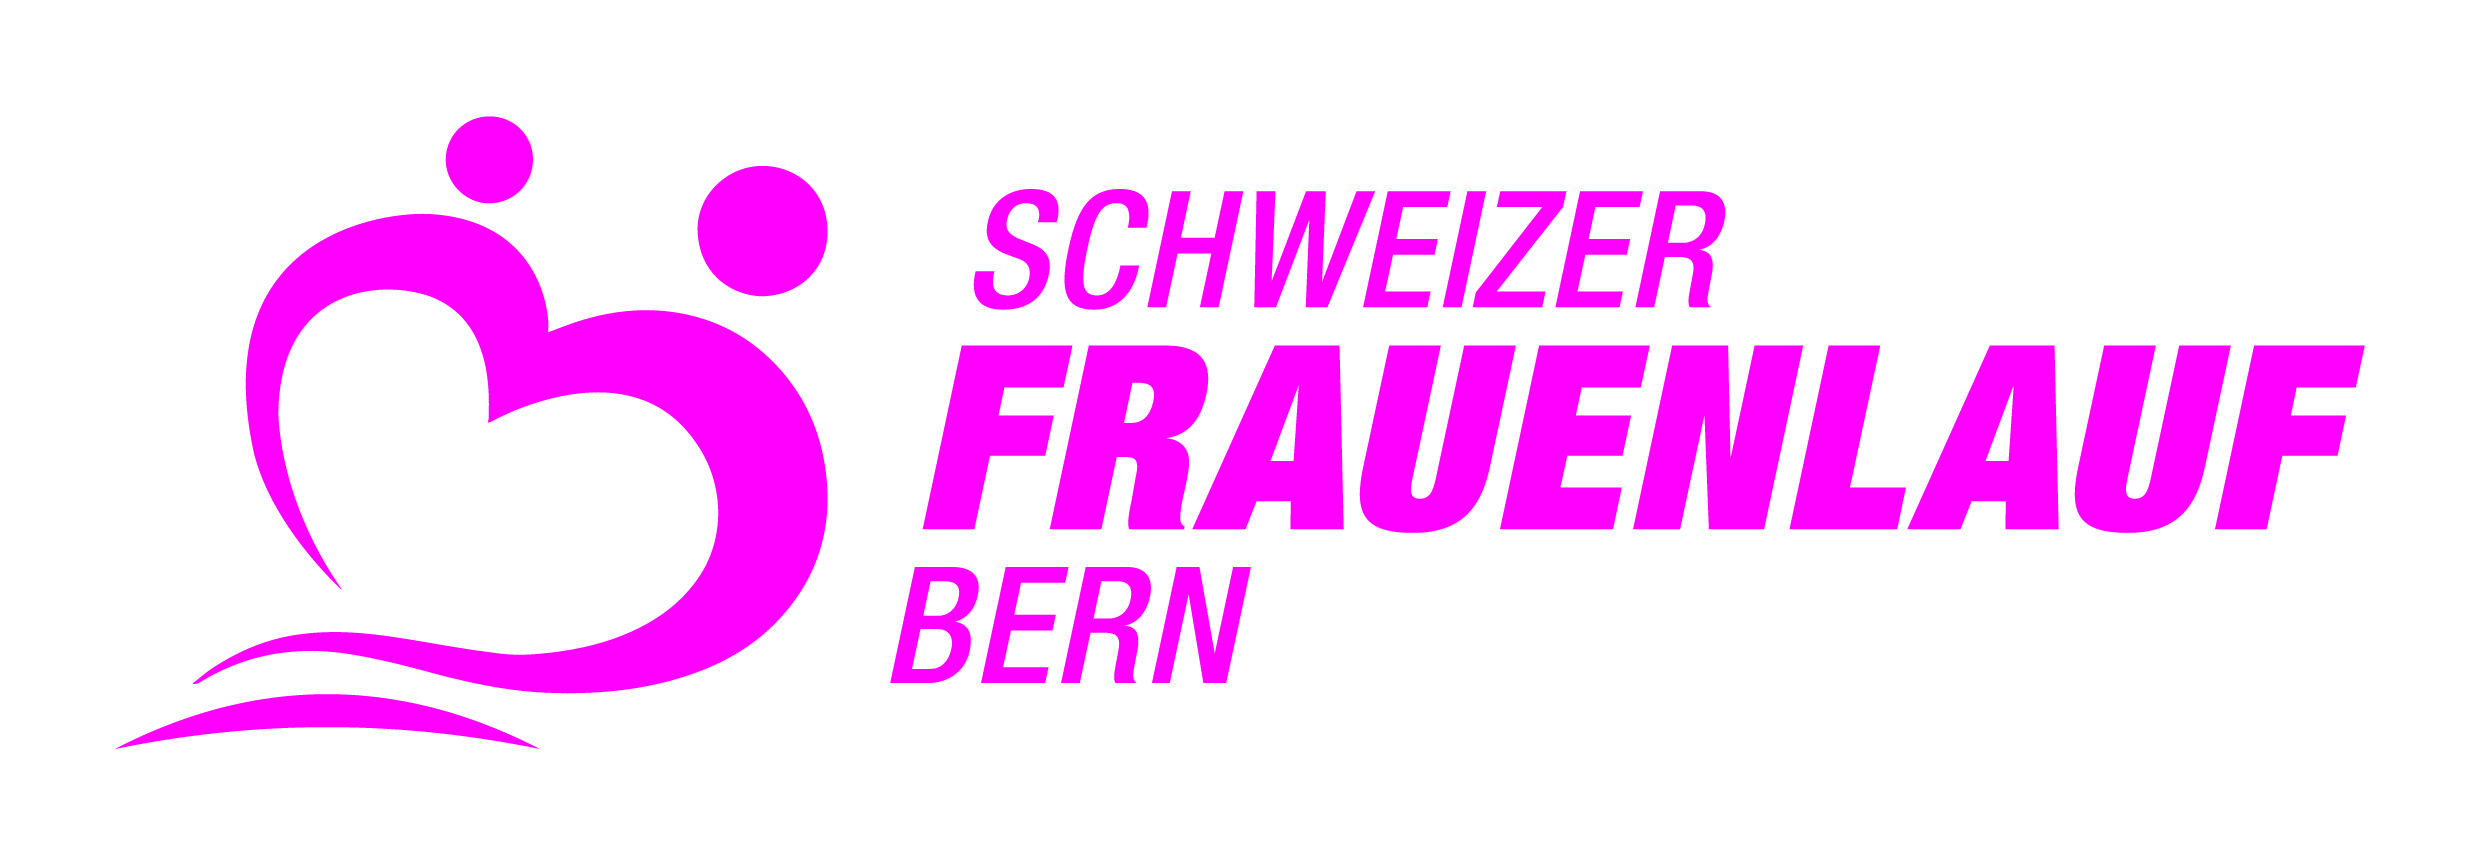 32. Schweizer Frauenlauf Bern